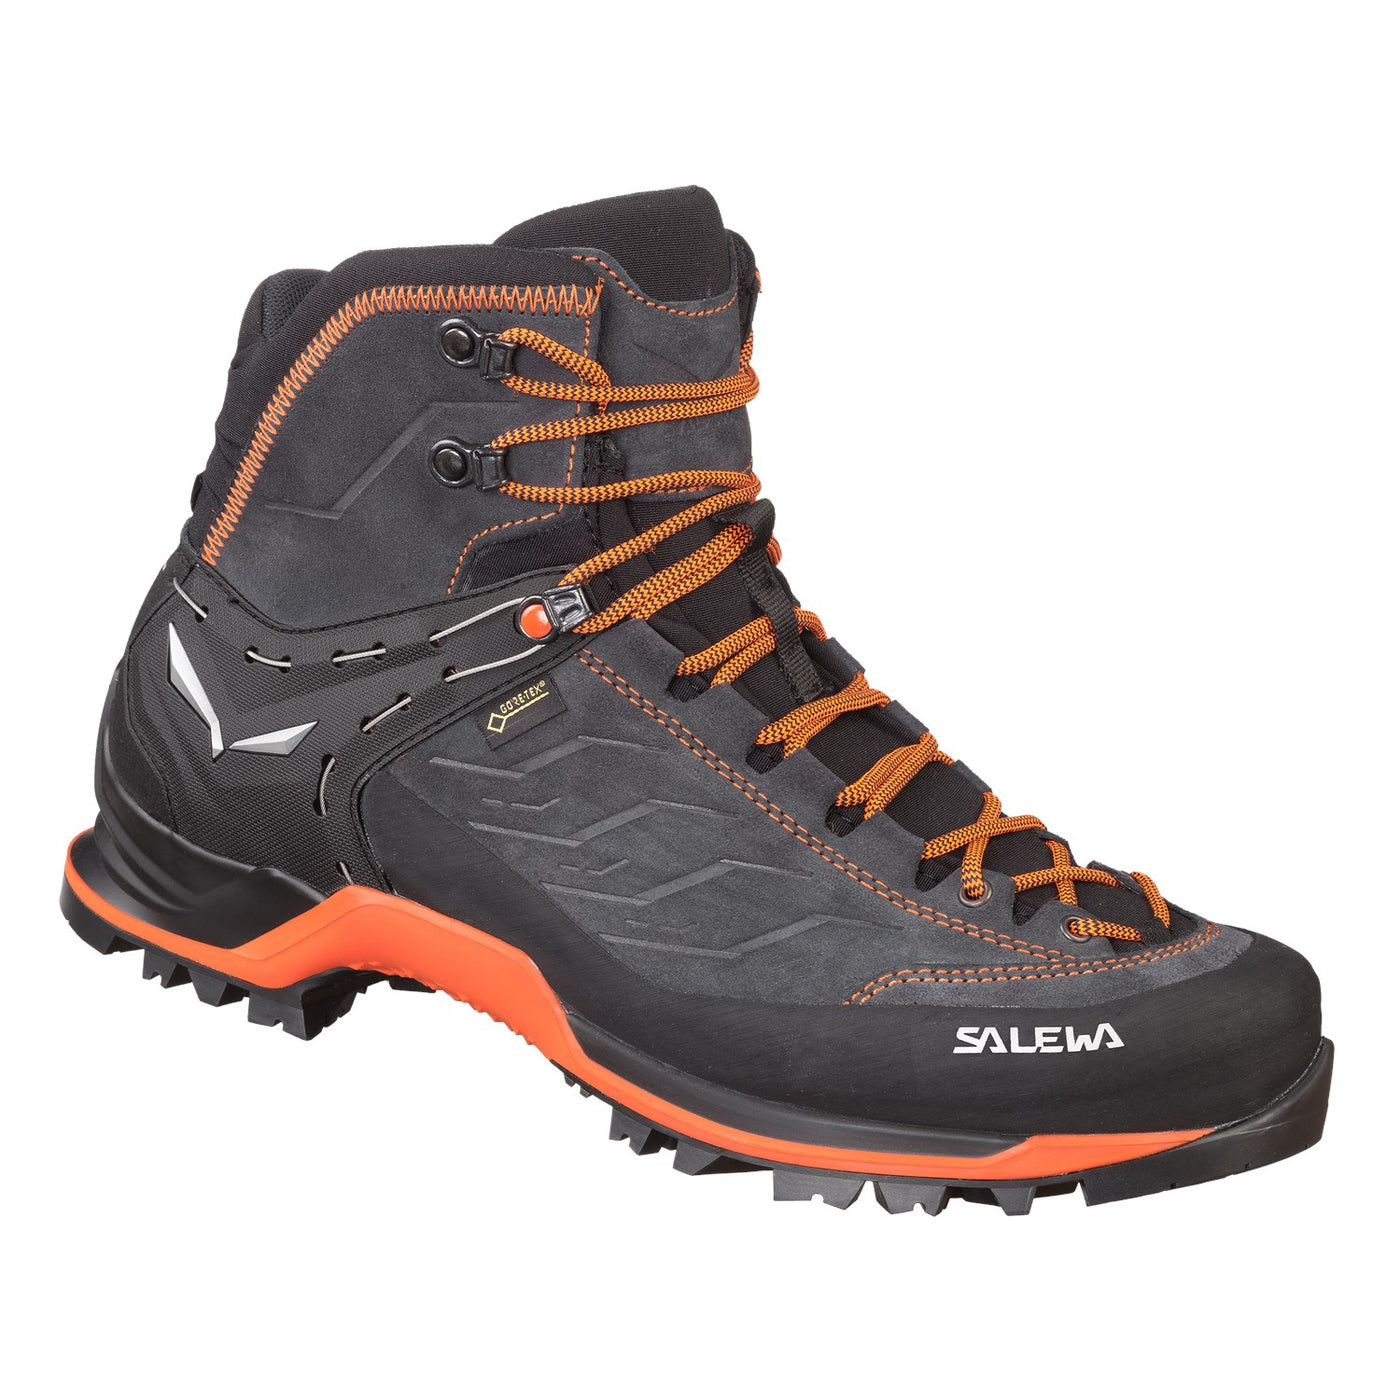 Salewa Mountain Trainer Mid Gore Tex | Salewa NZ Hiking Boots – Further ...